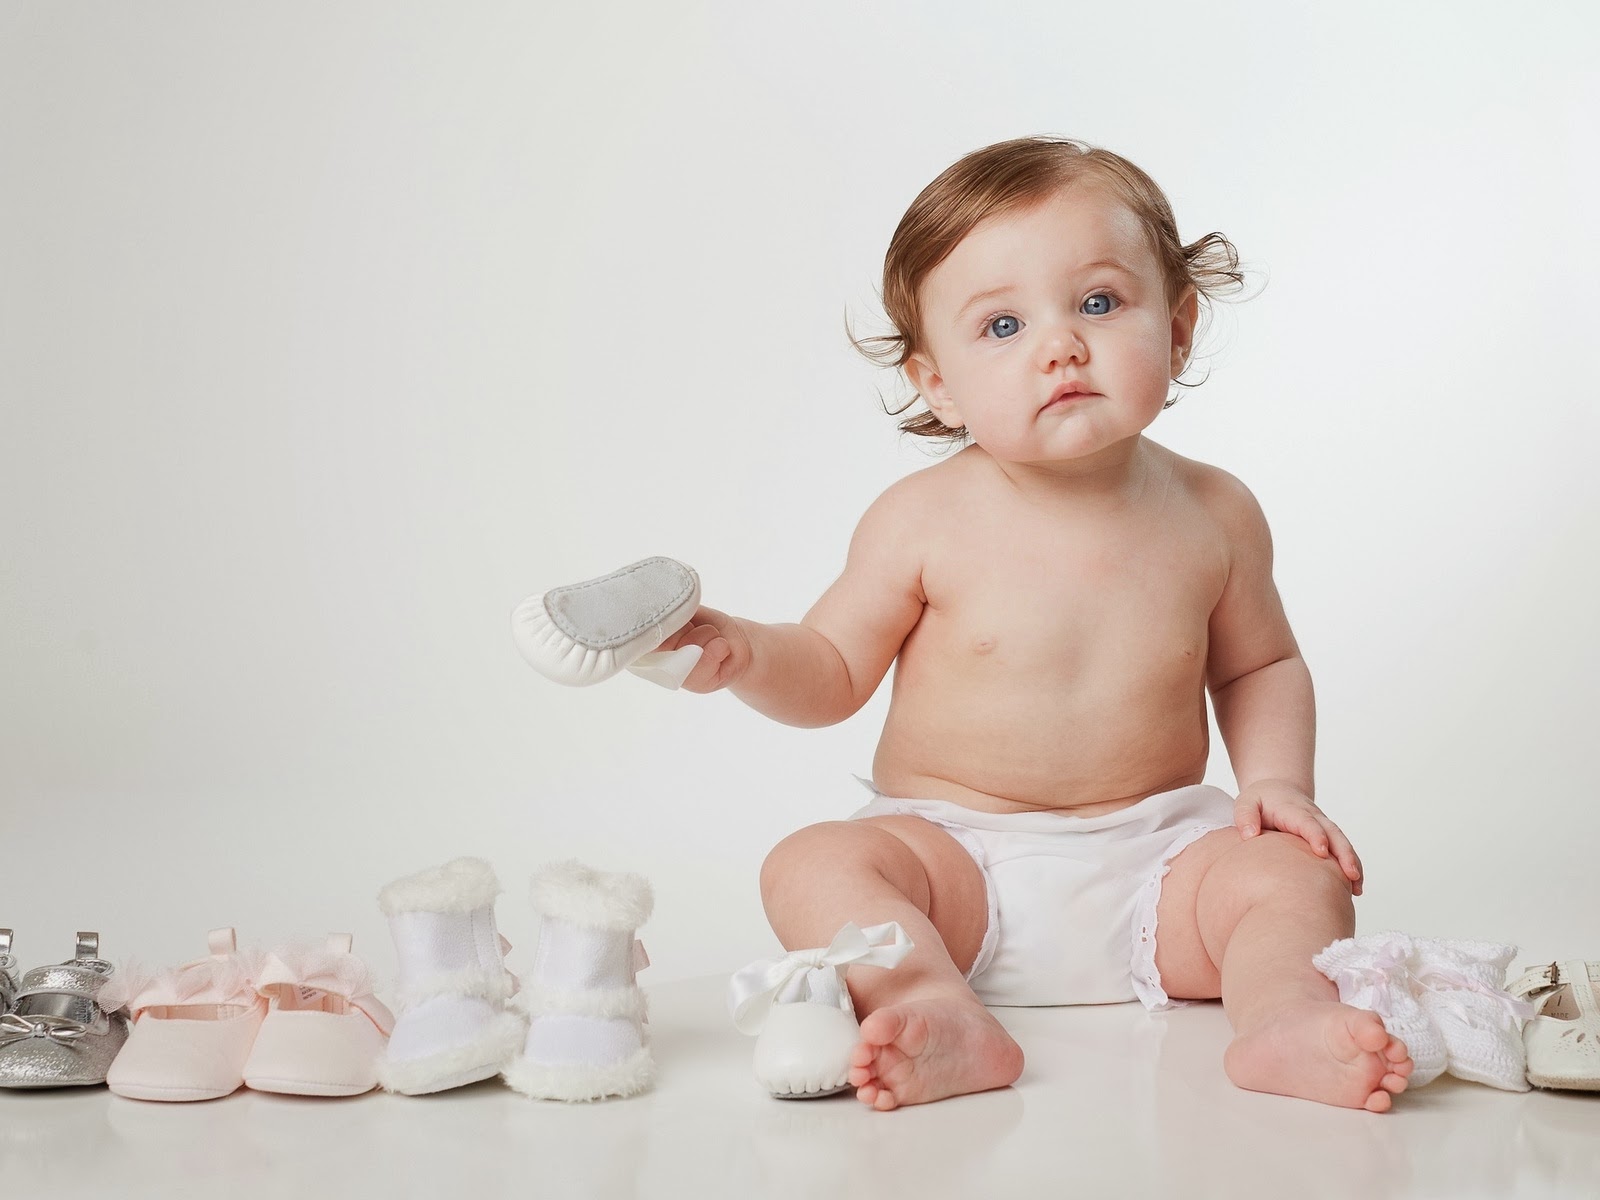 Cuál es el calzado más adecuado para cada etapa del bebé?